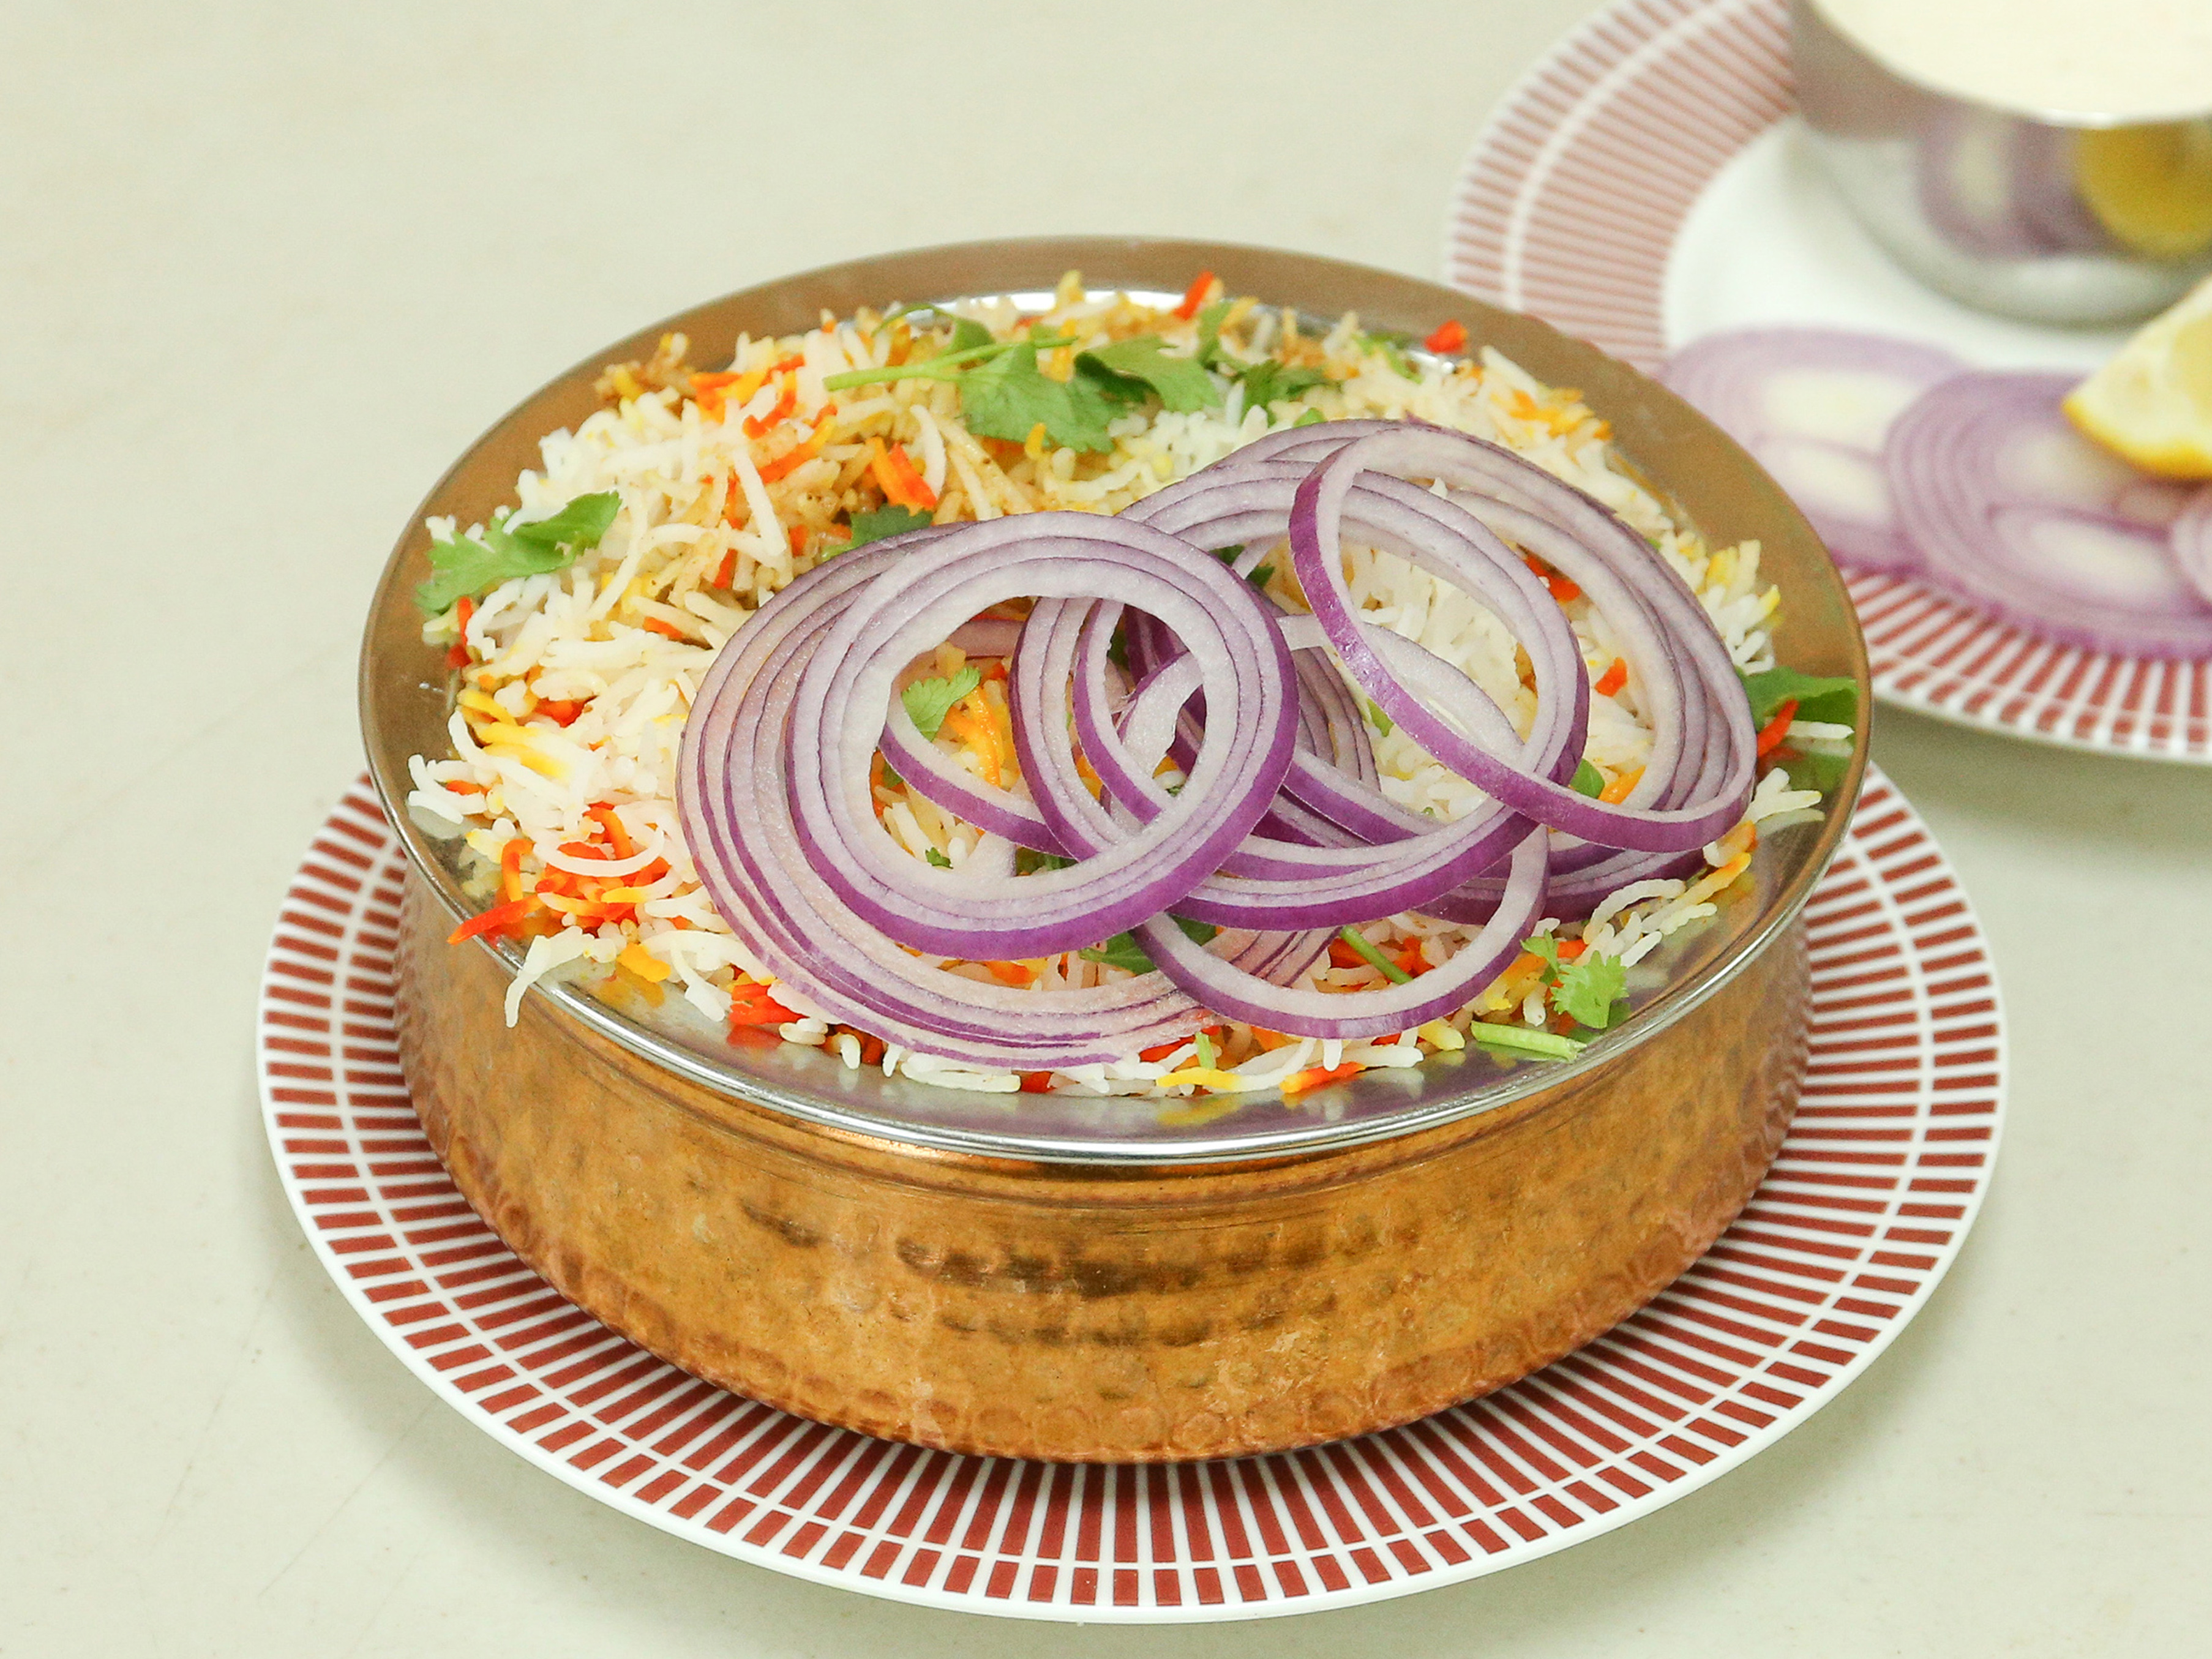 Order Vijayawada Special Paneer Biryani food online from Swathi Tiffins store, Sunnyvale on bringmethat.com